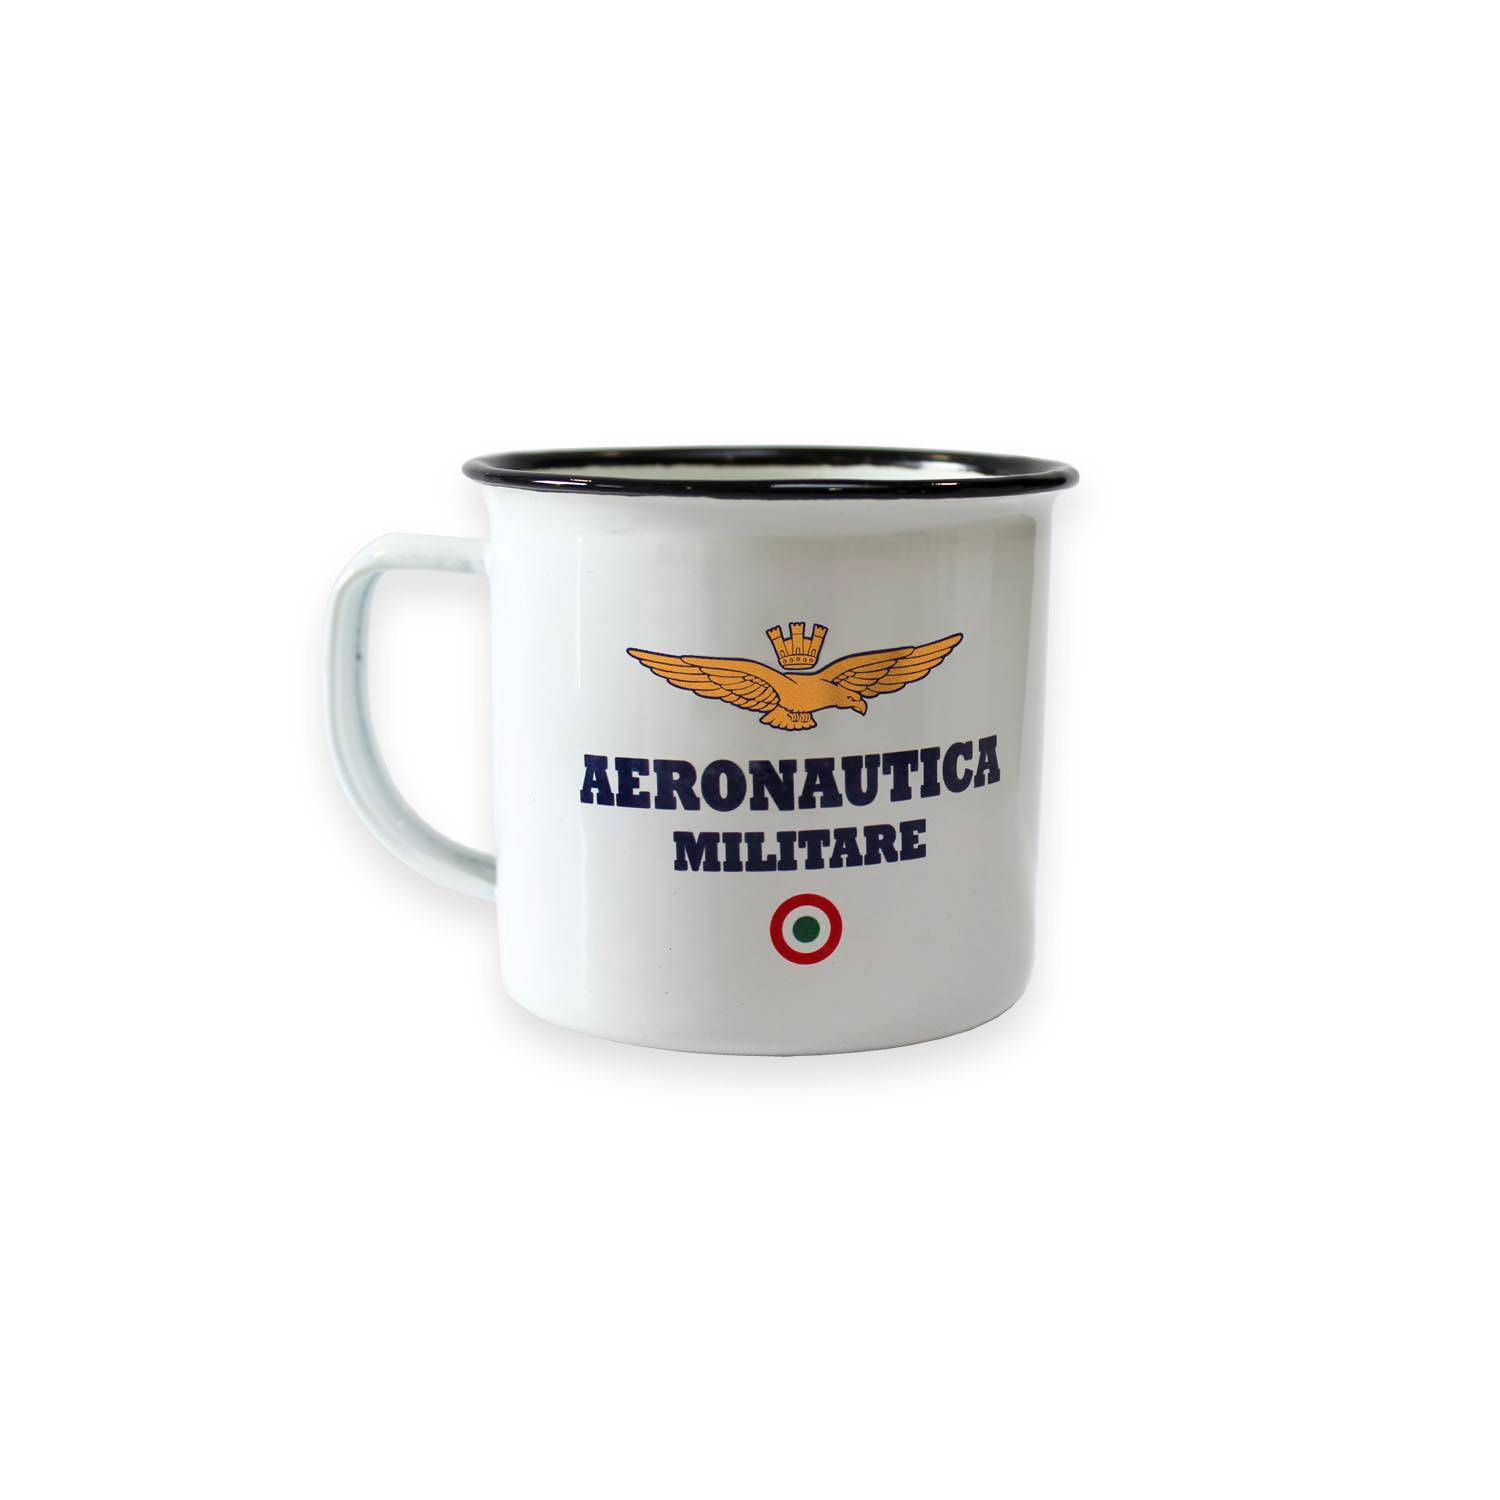 Tazza mug vintage in metallo Aeronautica Militare - Caffè Pascucci  Torrefazione